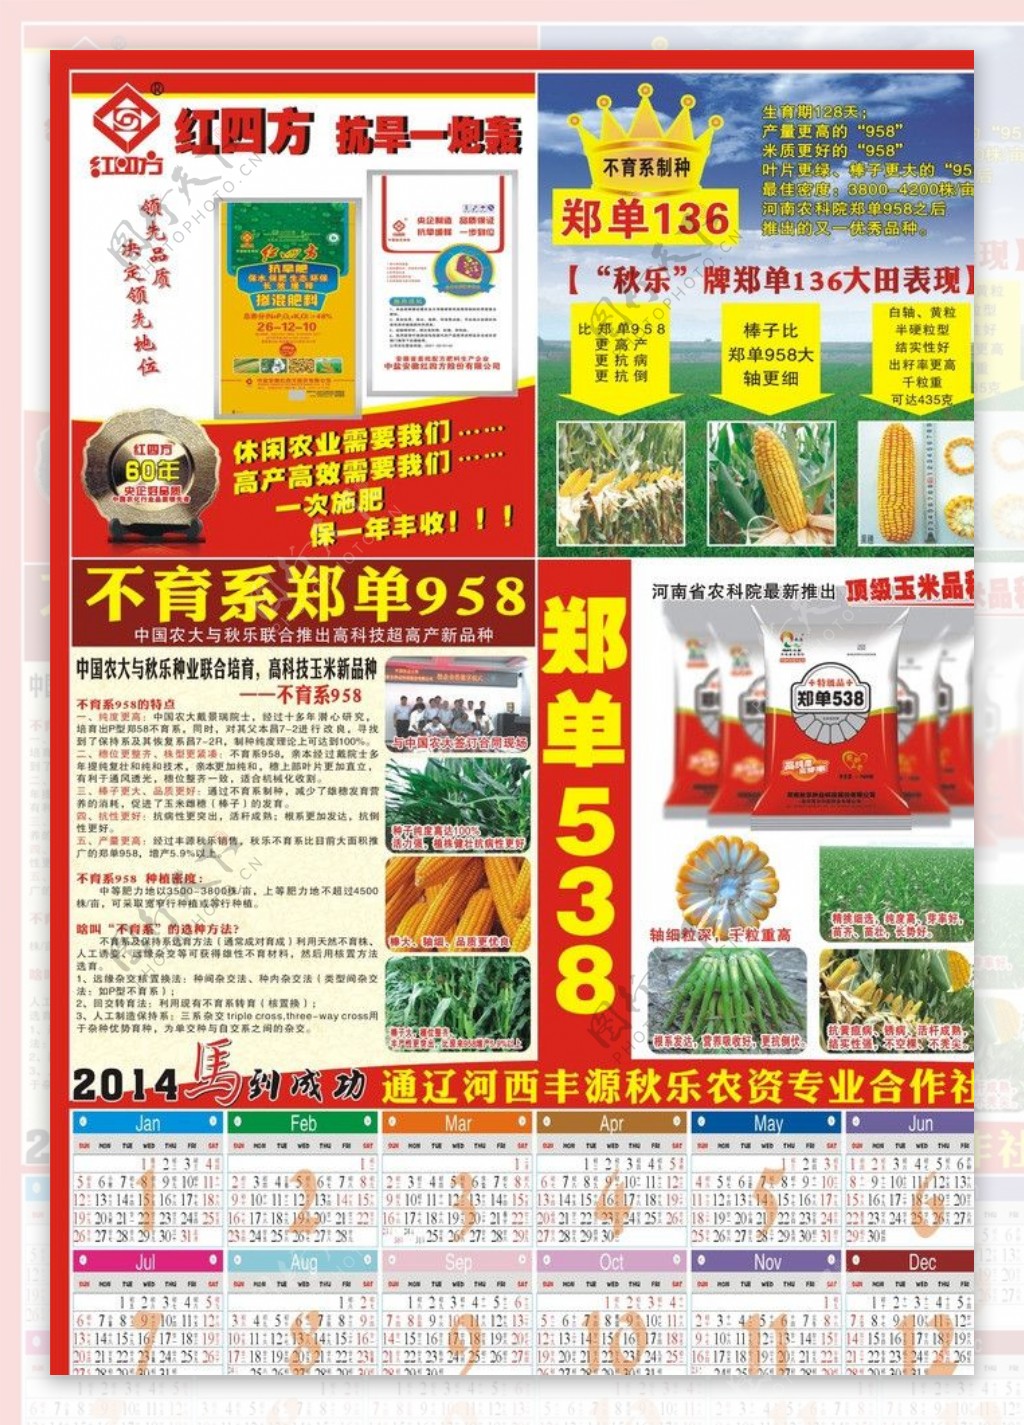 2014年种子日历图片